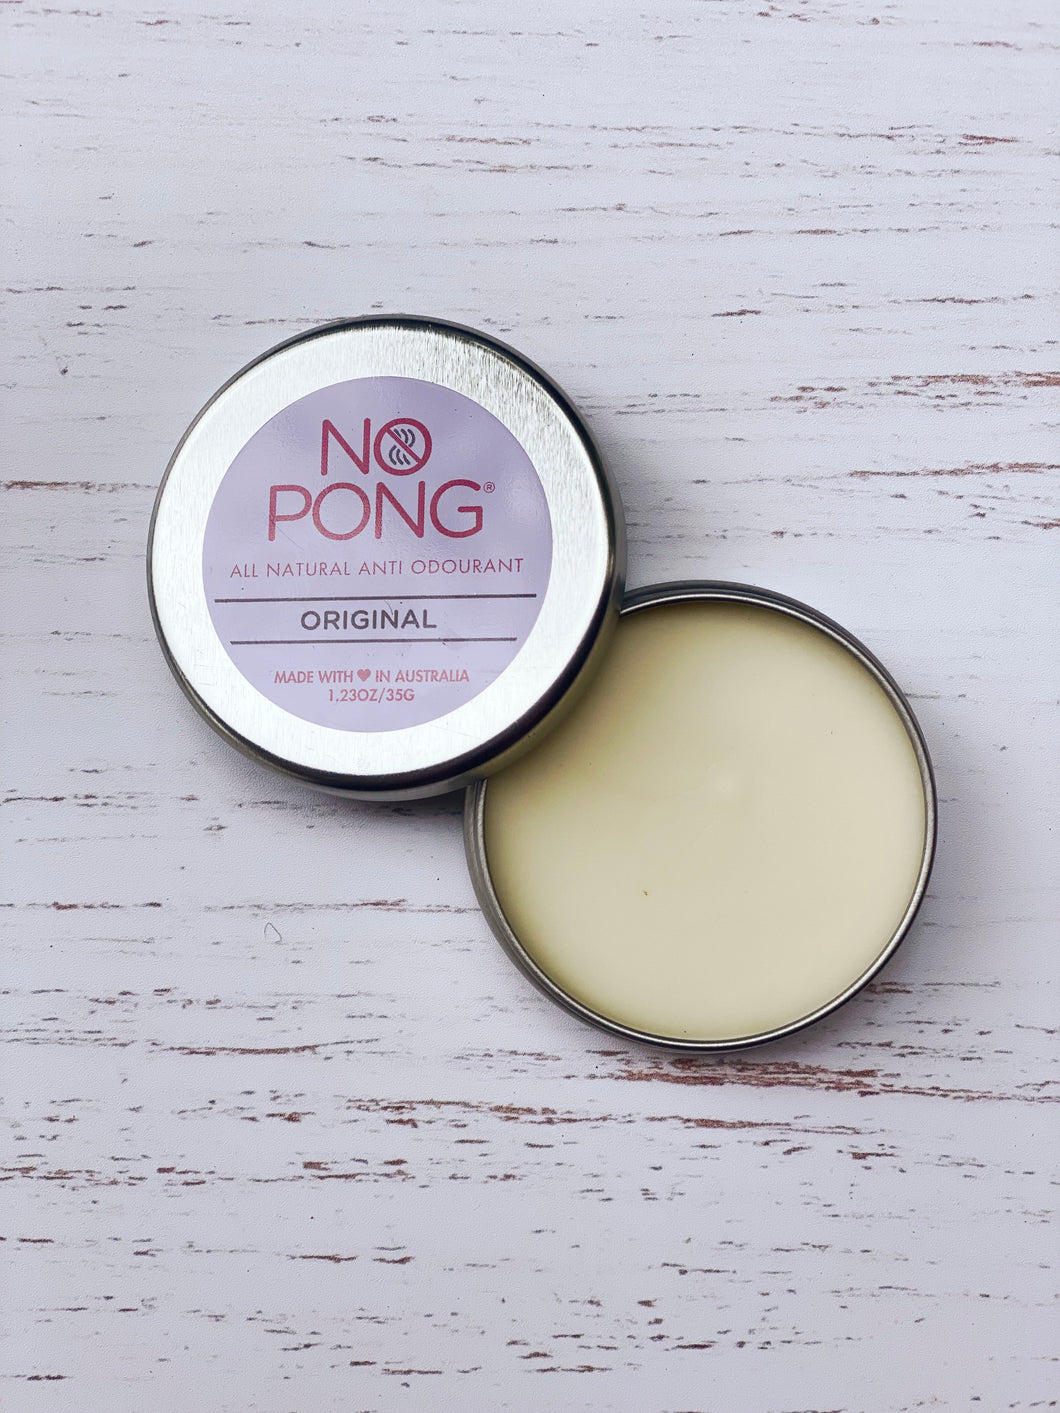 No Pong Original Anti Odourant 35g